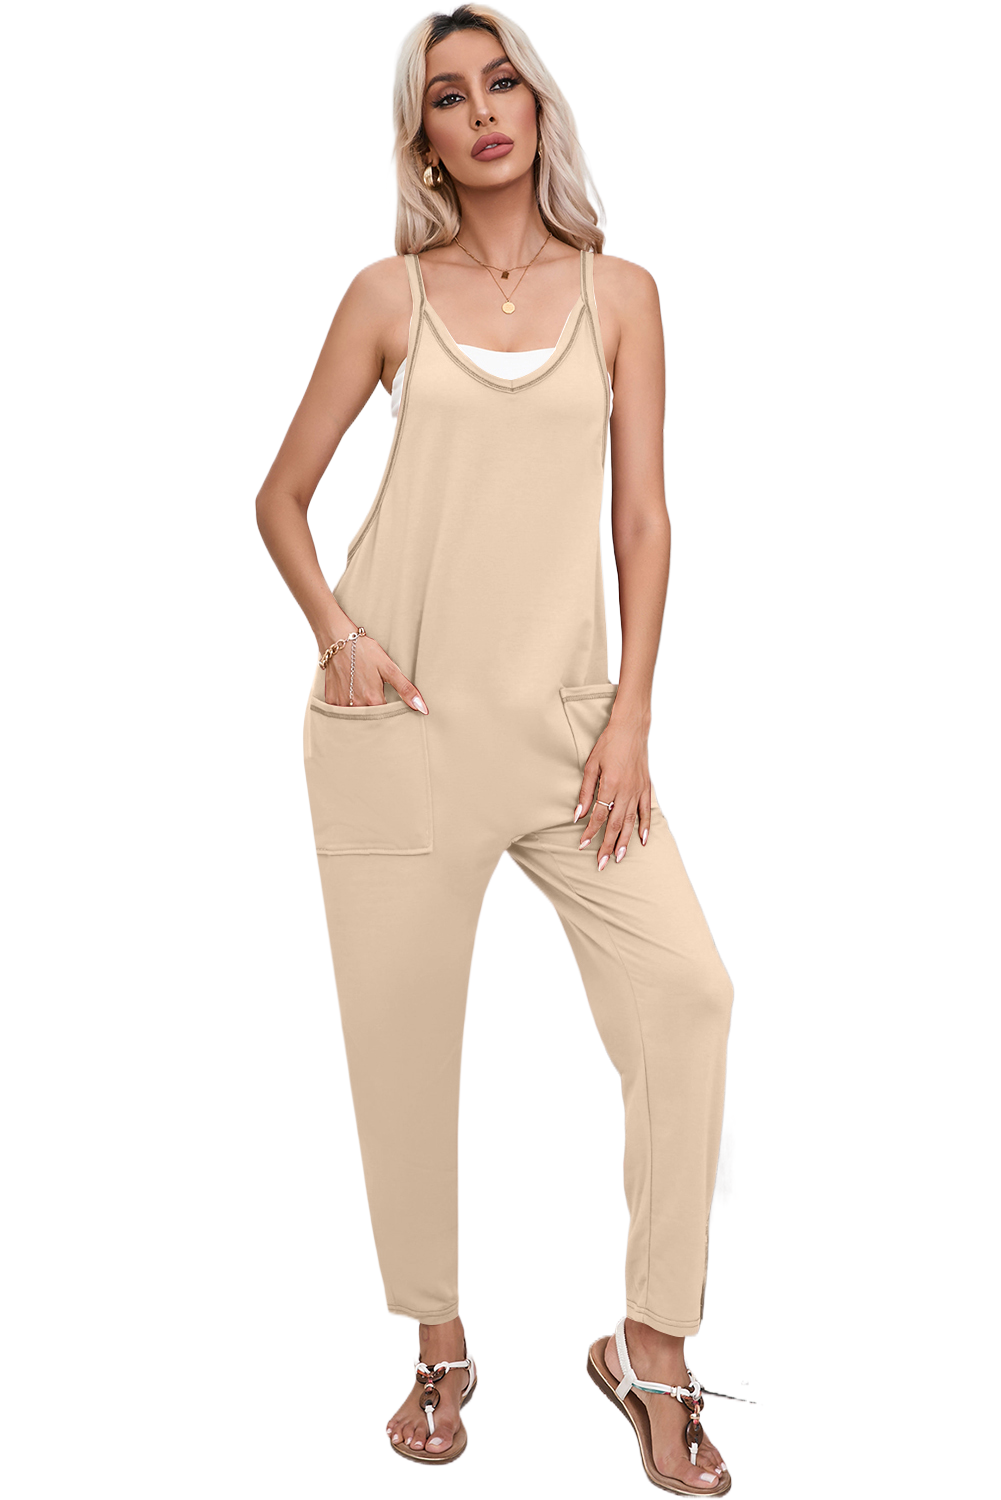 Apricot Side Pockets Harem Pants Sleeveless V Neck Jumpsuit Pre Order Bottoms JT's Designer Fashion